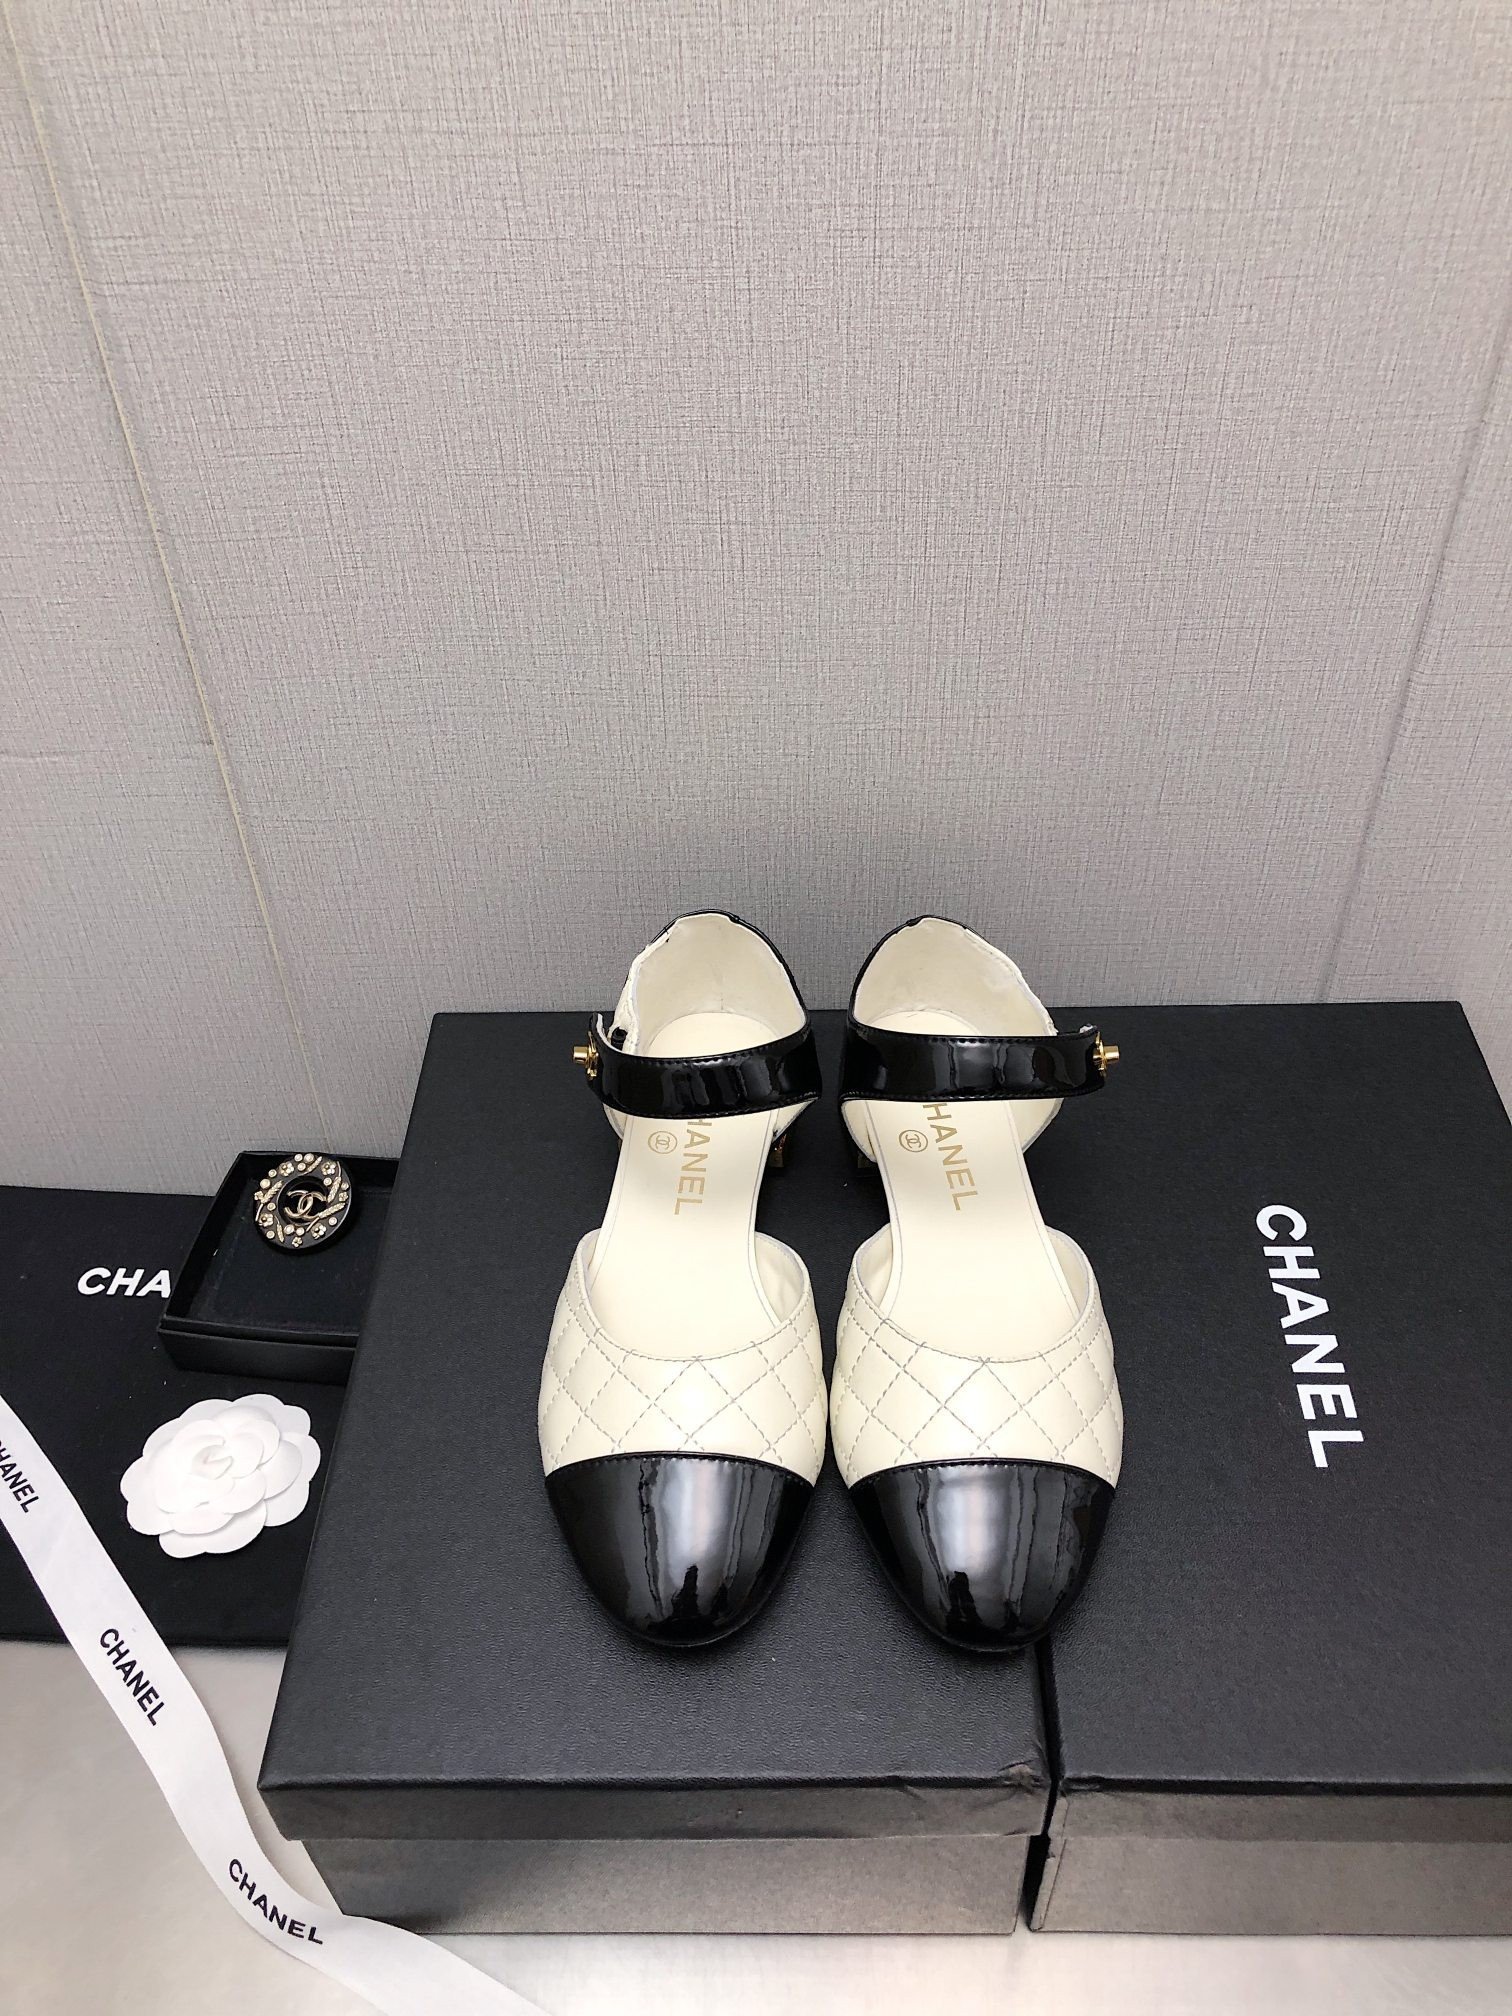 Giày Chanel 23P Catwalk Siêu Cấp Trắng Đen Size 35-39